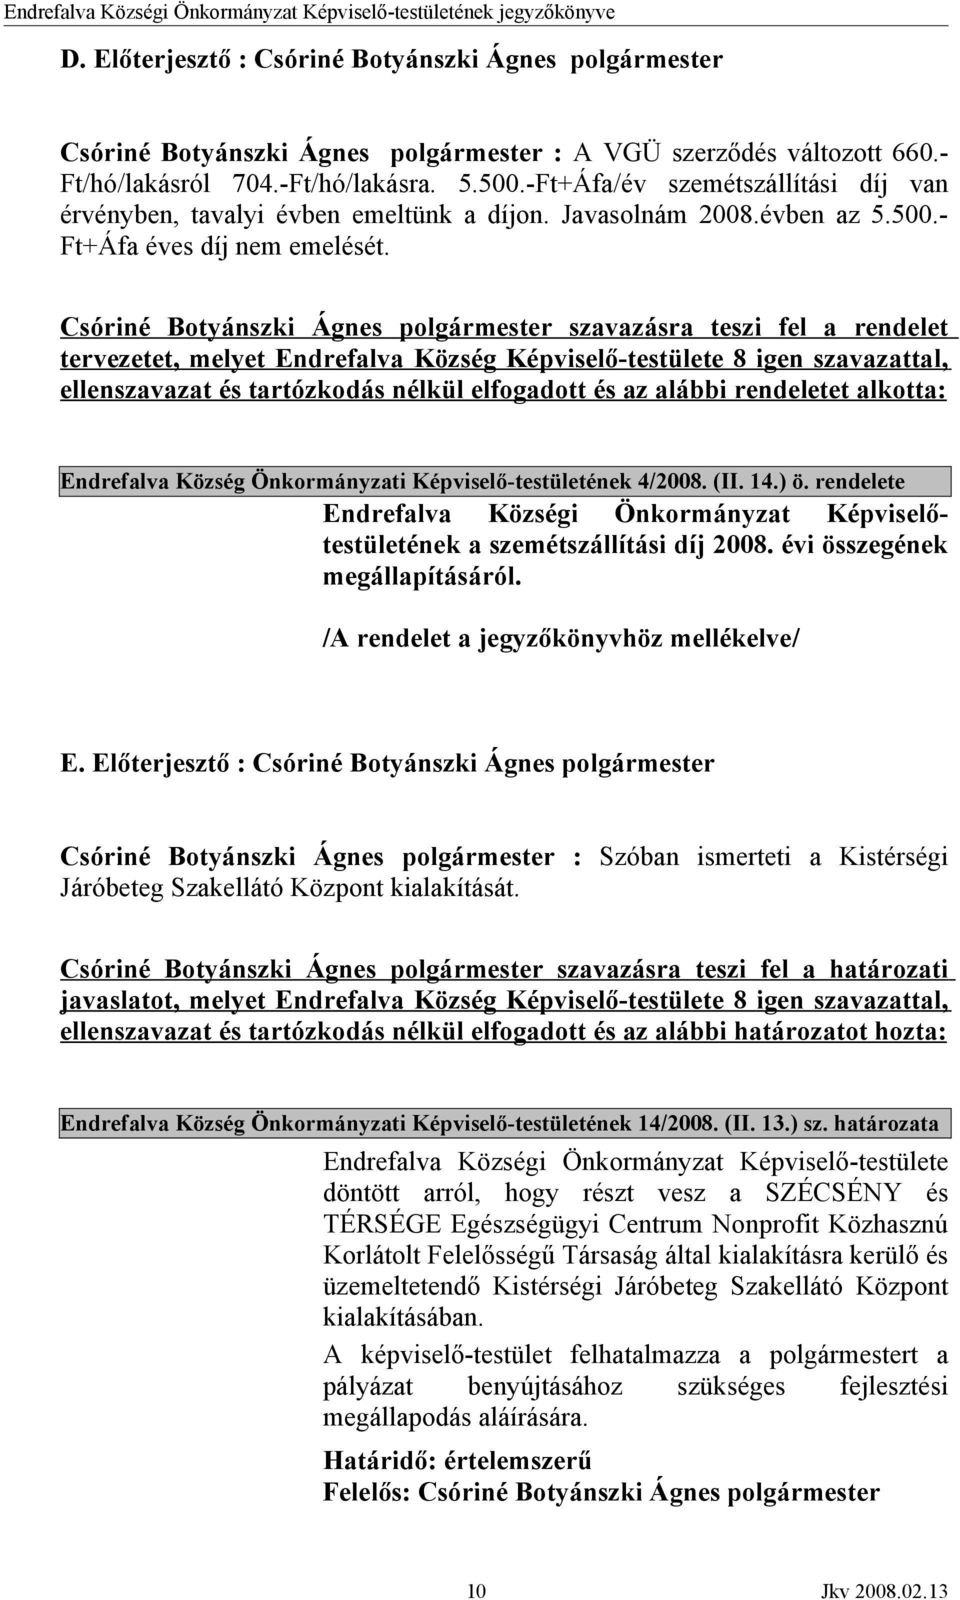 Csóriné Botyánszki Ágnes polgármester szavazásra teszi fel a rendelet tervezetet, melyet Endrefalva Község Képviselő-testülete 8 igen szavazattal, ellenszavazat és tartózkodás nélkül elfogadott és az